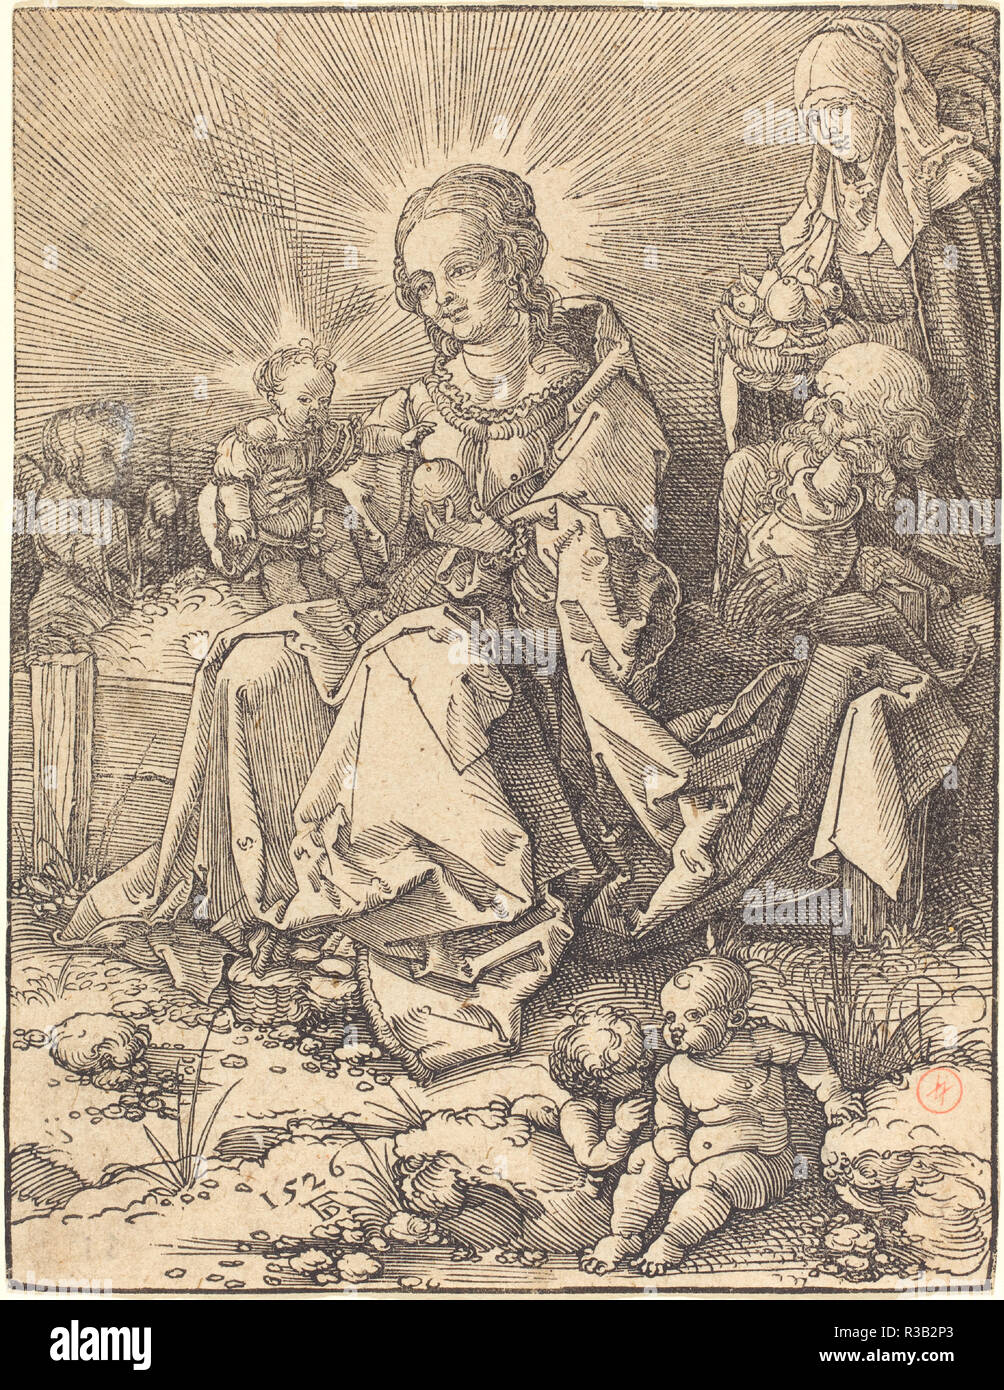 La Sainte Famille sur un banc. En date du : 1526. Technique : gravure sur bois. Musée : National Gallery of Art, Washington DC. Auteur : Dürer, Albrecht. Banque D'Images